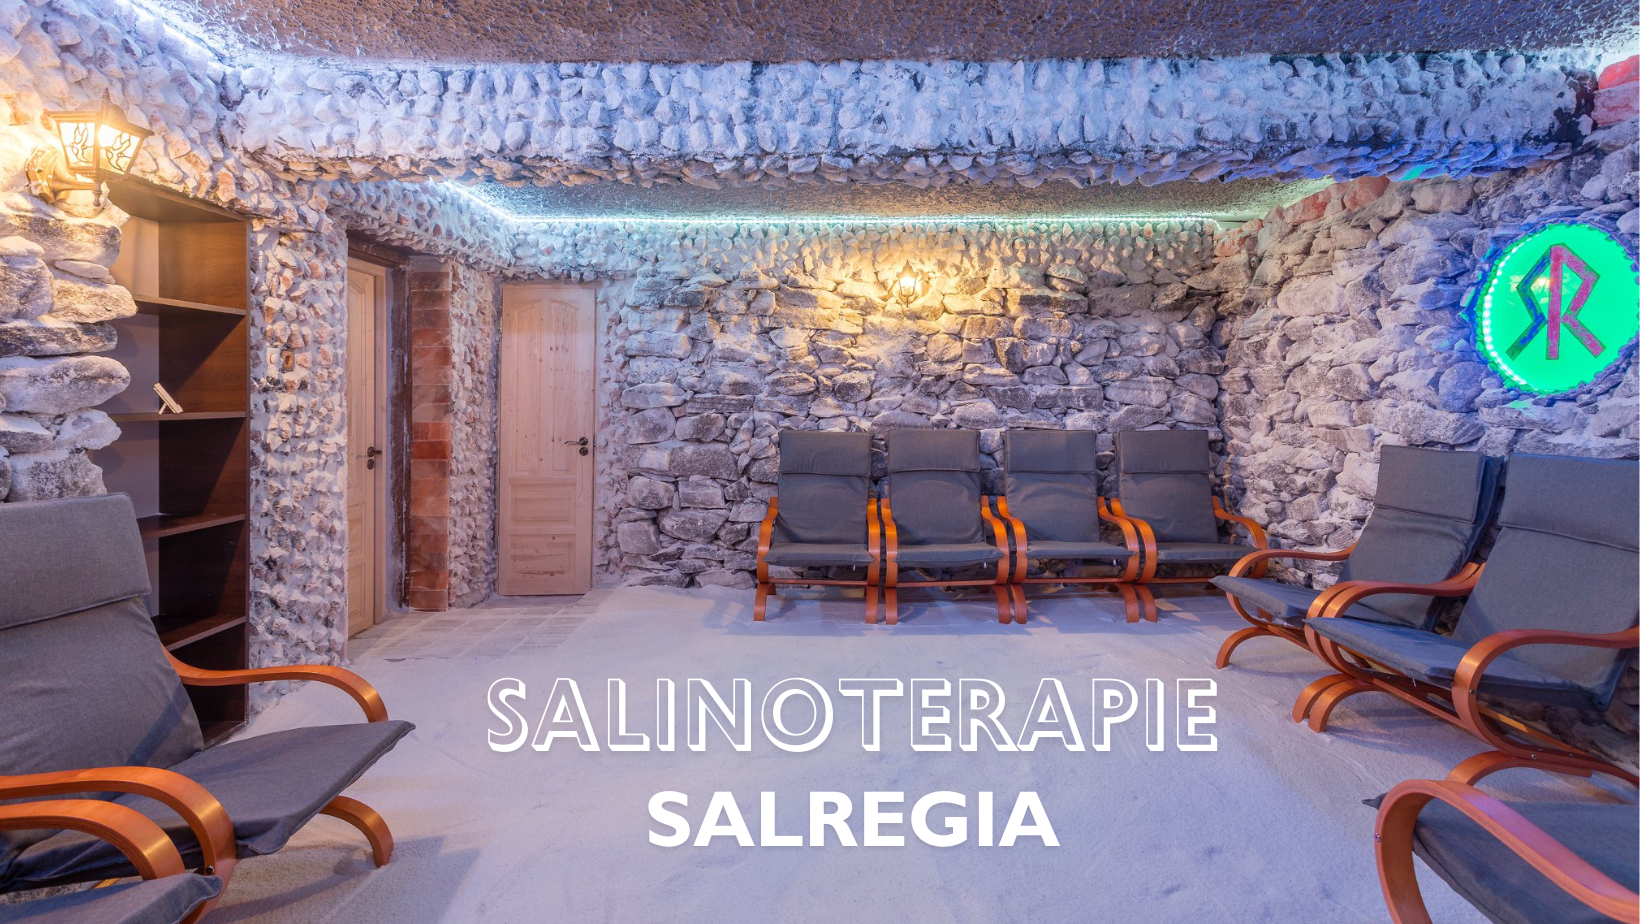 SalRegia – salinoterapie și relaxare în București